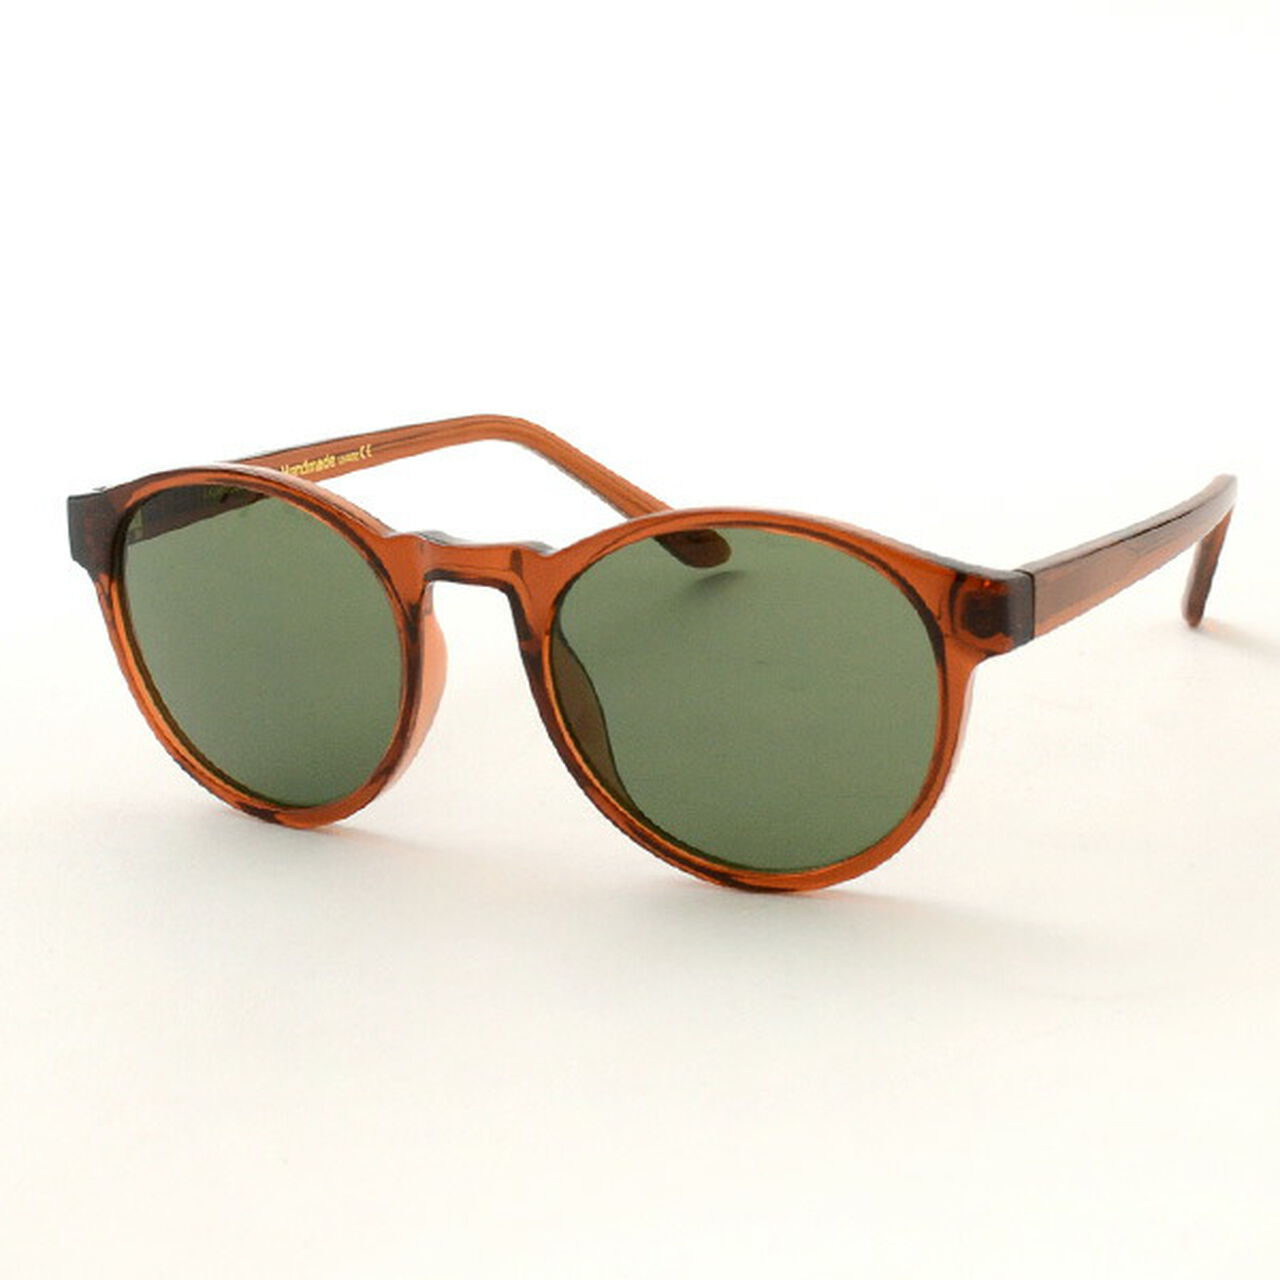 Marvin Cell Frame Sunglasses,BrownTransparent, large image number 0